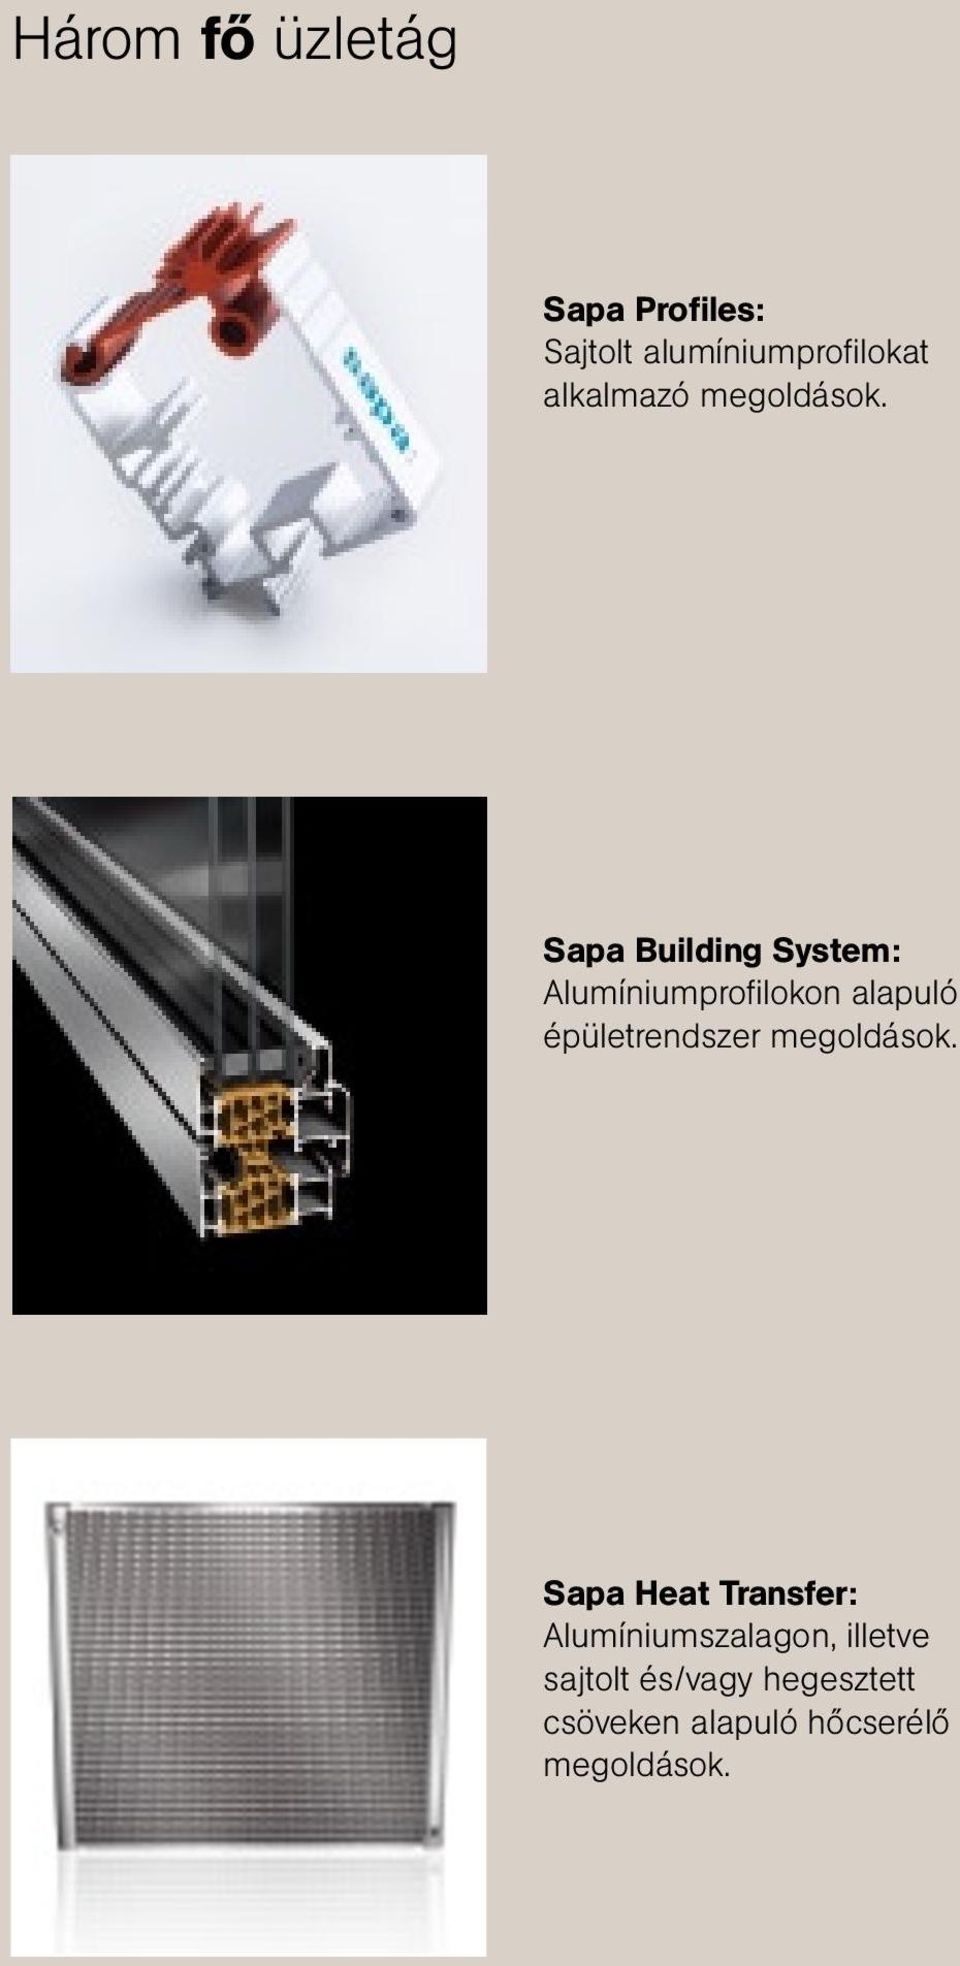 Sapa Building System: Alumíniumprofi lokon alapuló épületrendszer